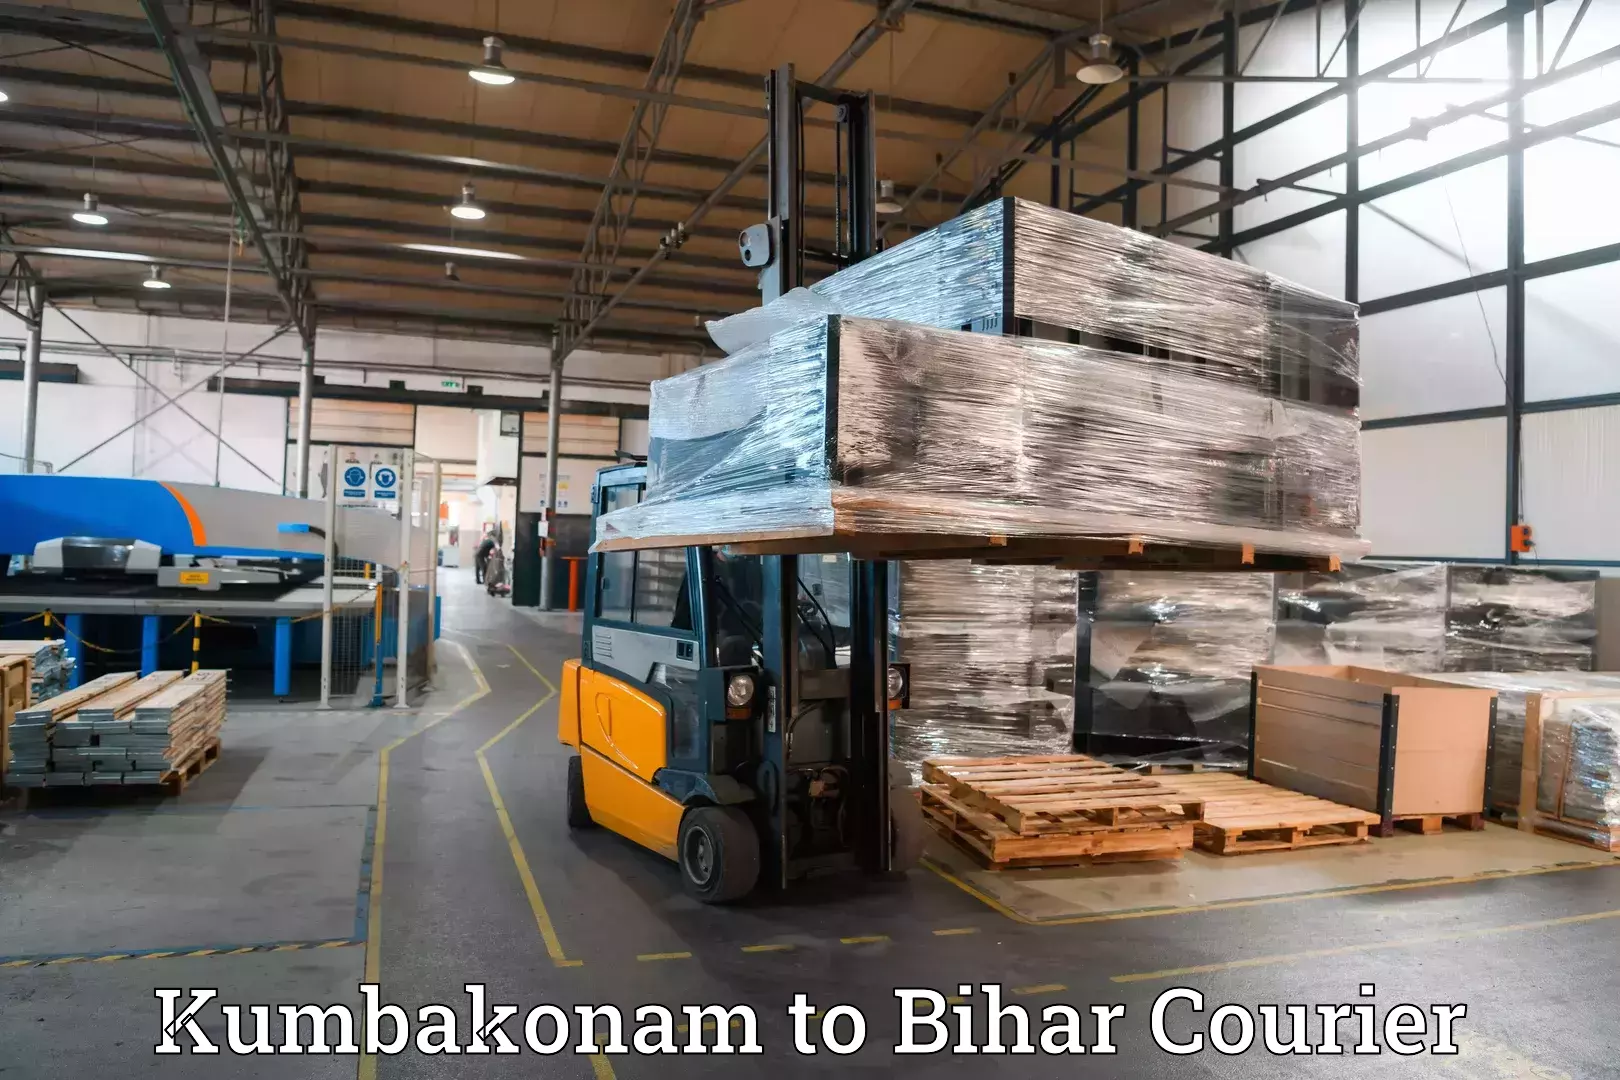 Luggage transport solutions Kumbakonam to Ekma